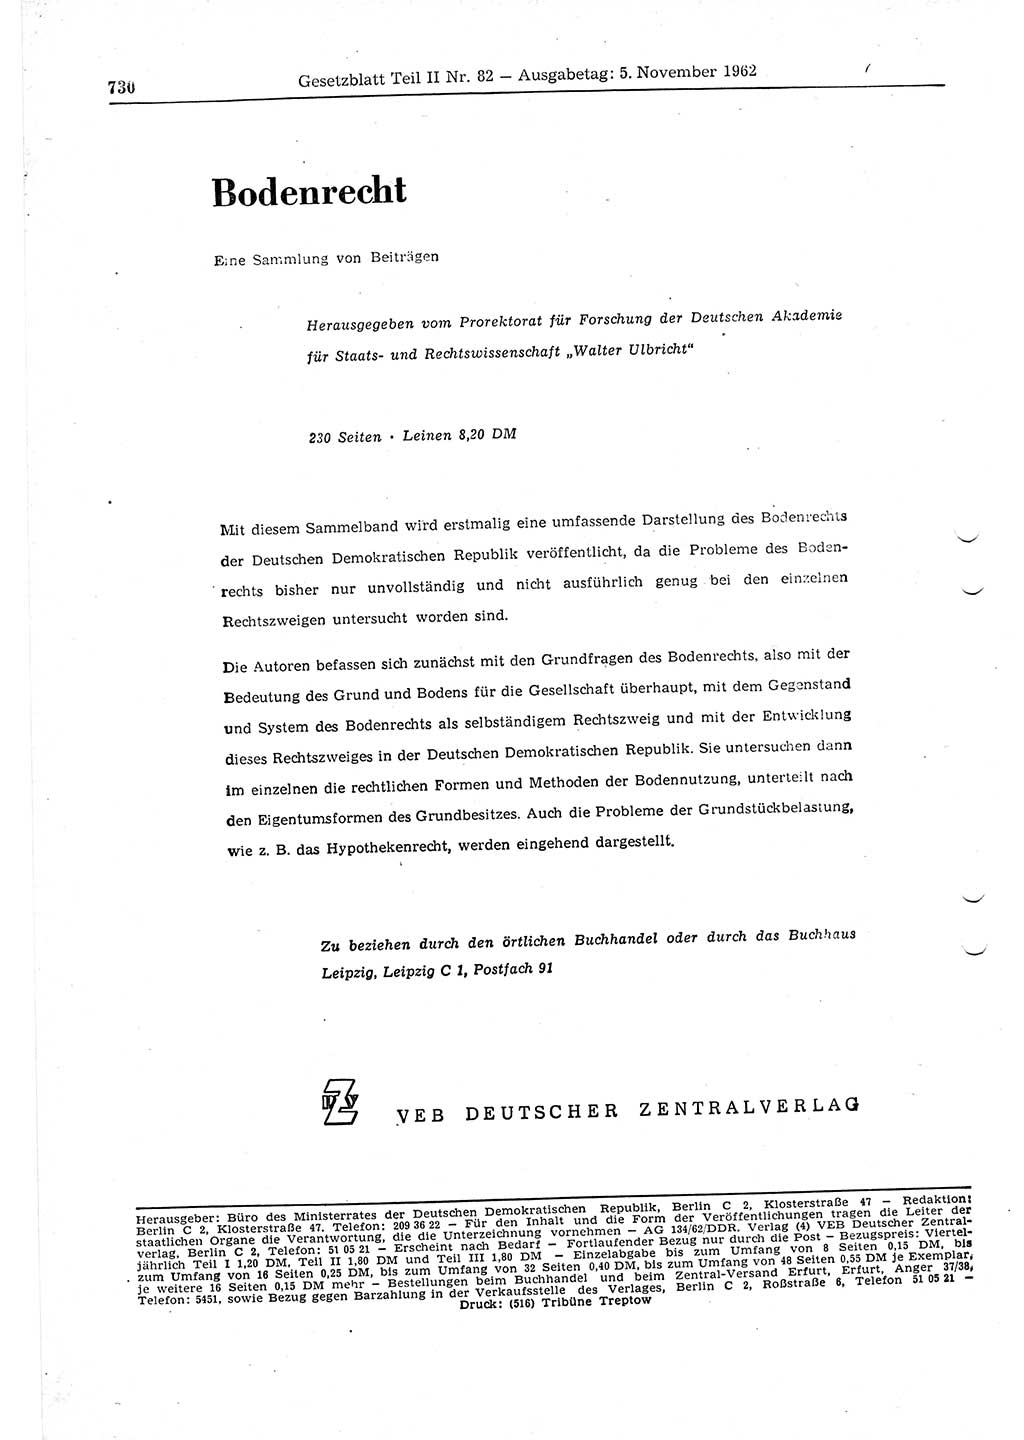 Gesetzblatt (GBl.) der Deutschen Demokratischen Republik (DDR) Teil ⅠⅠ 1962, Seite 730 (GBl. DDR ⅠⅠ 1962, S. 730)